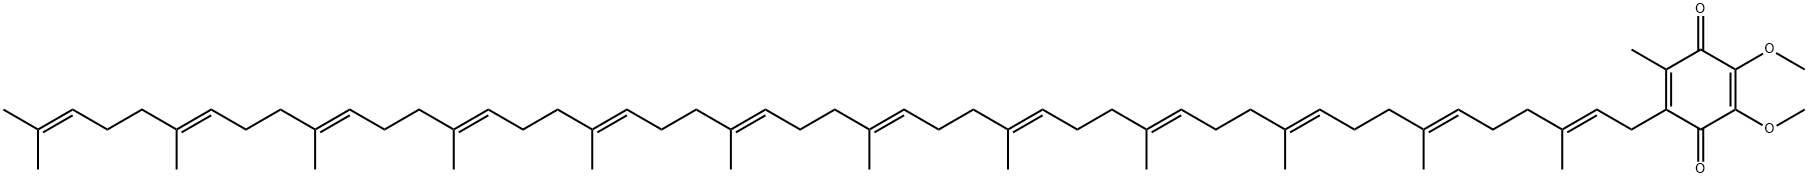 24663-36-3 化合物 T30997